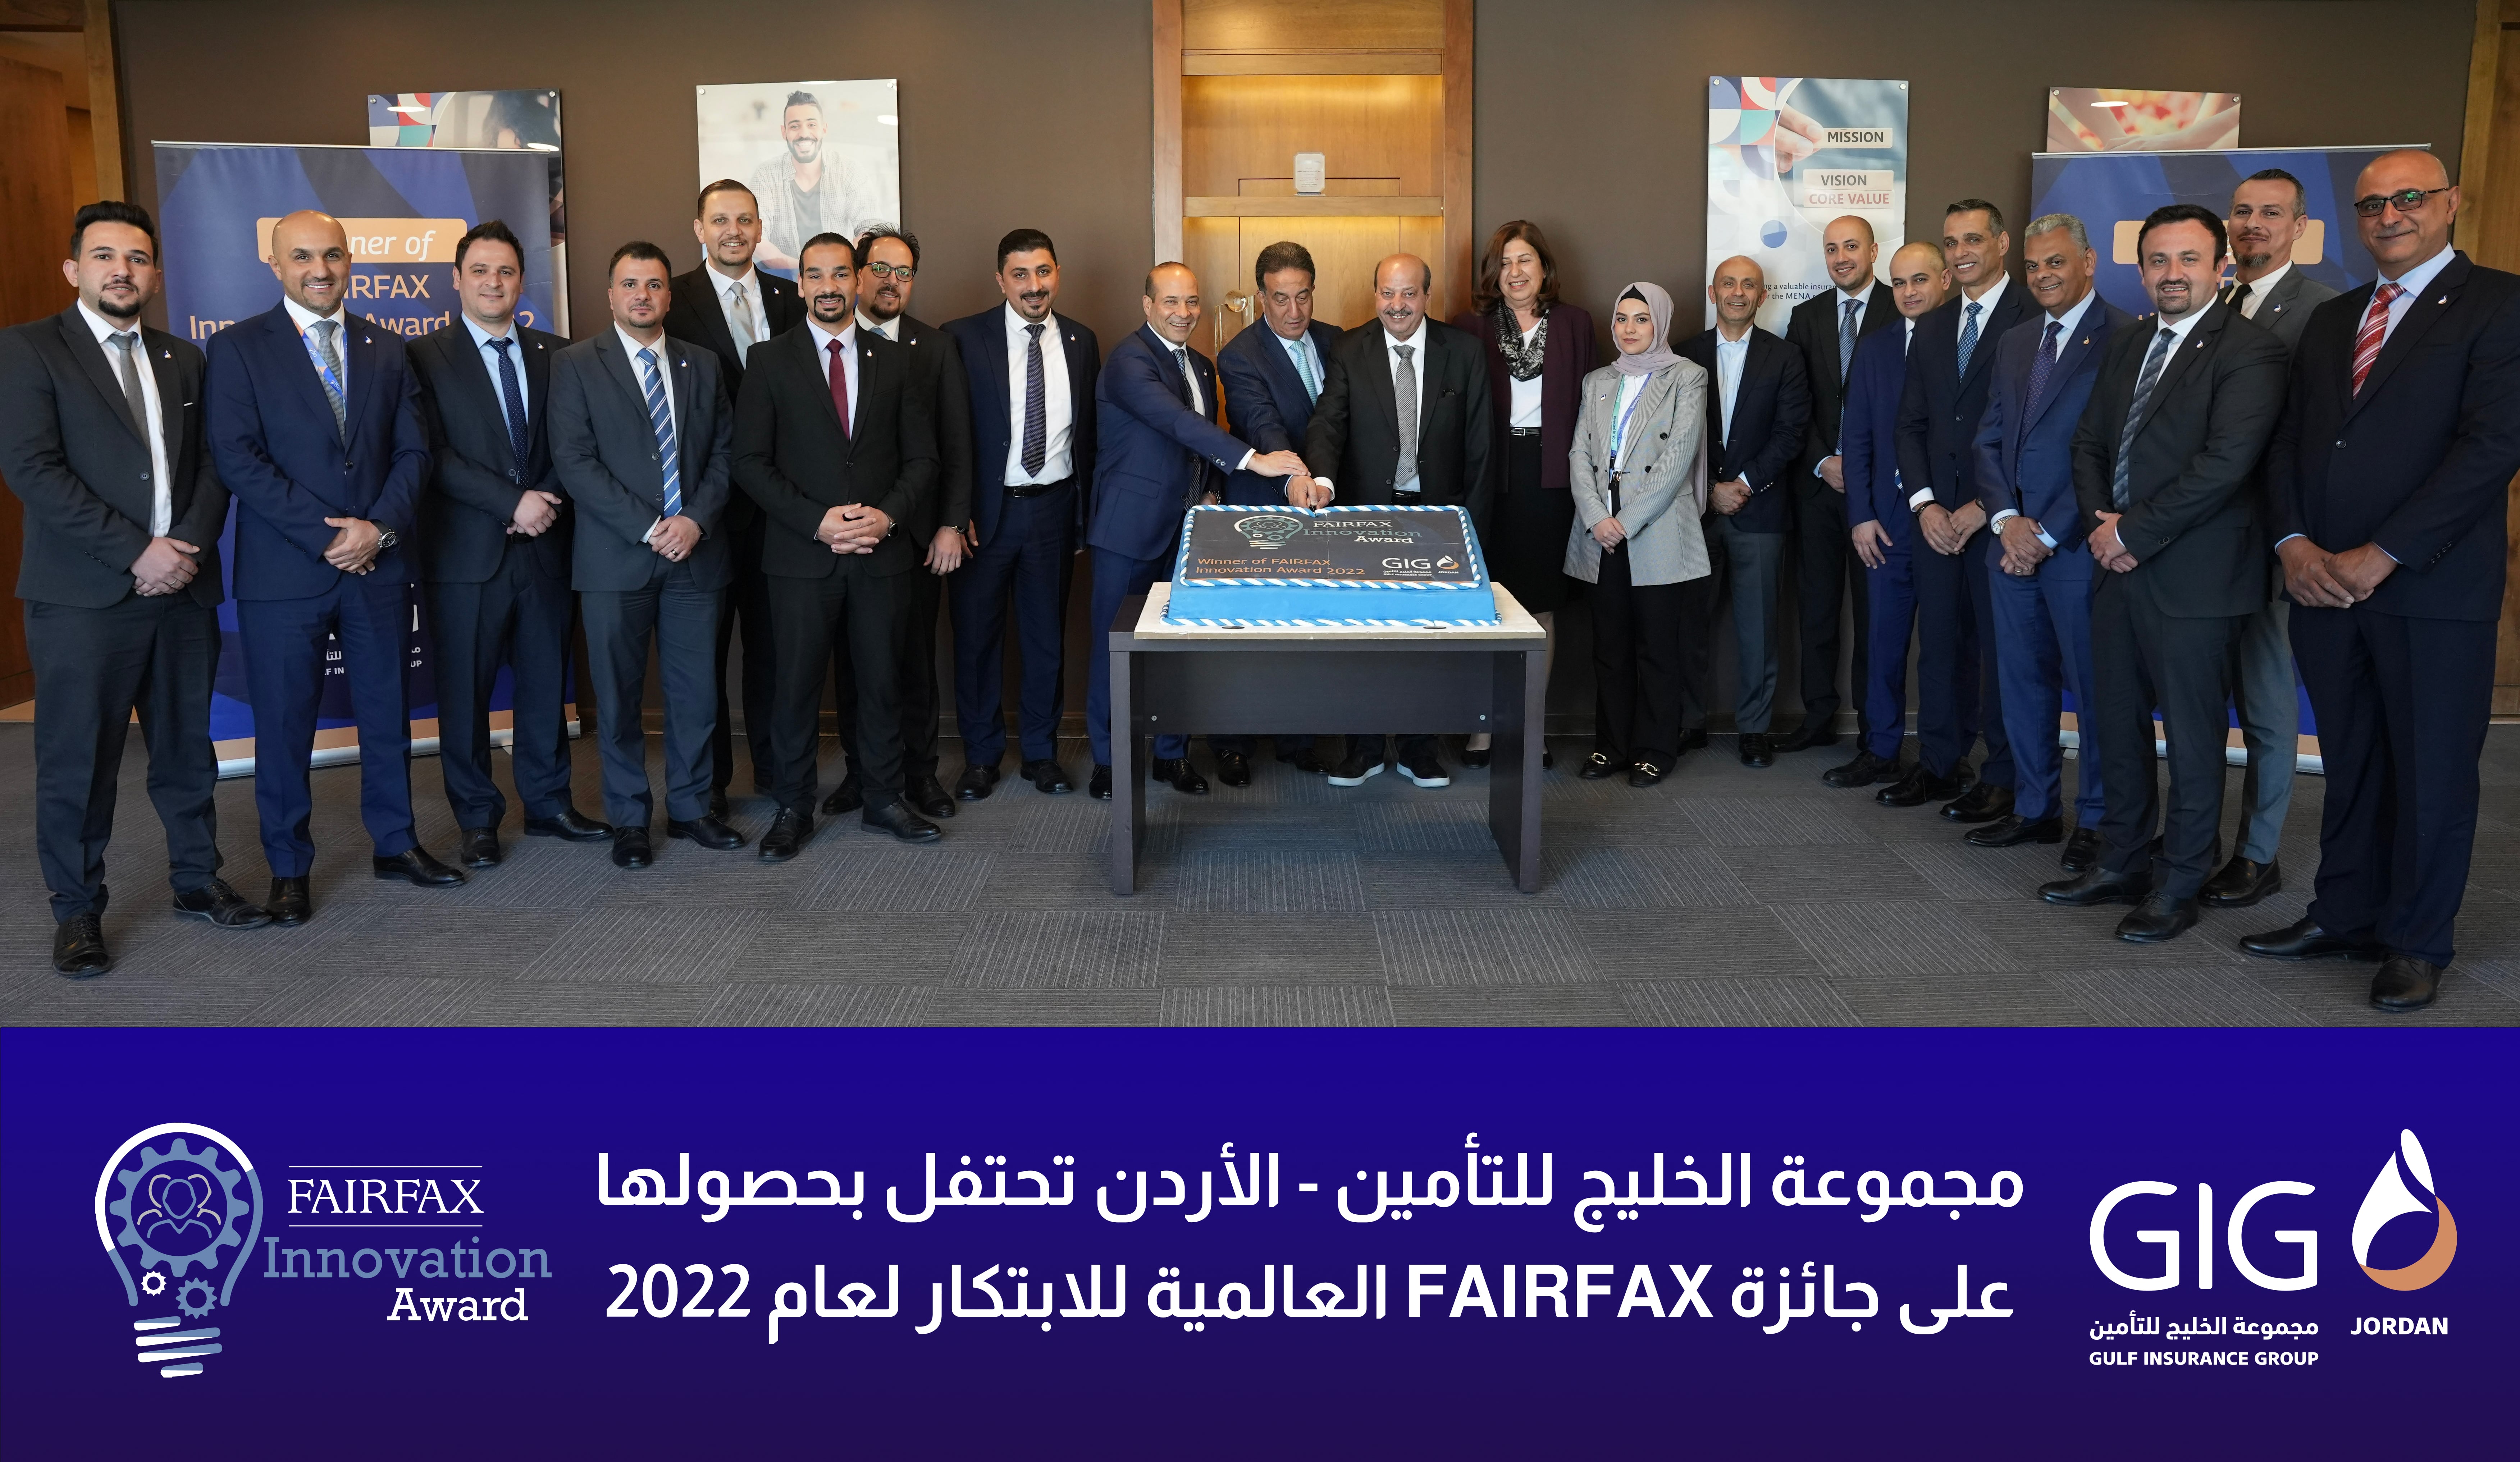 مجموعة الخليج للتأمين - الأردن تحتفل بحصولها على جائزة FairFax العالمية للابتكار لعام 2022